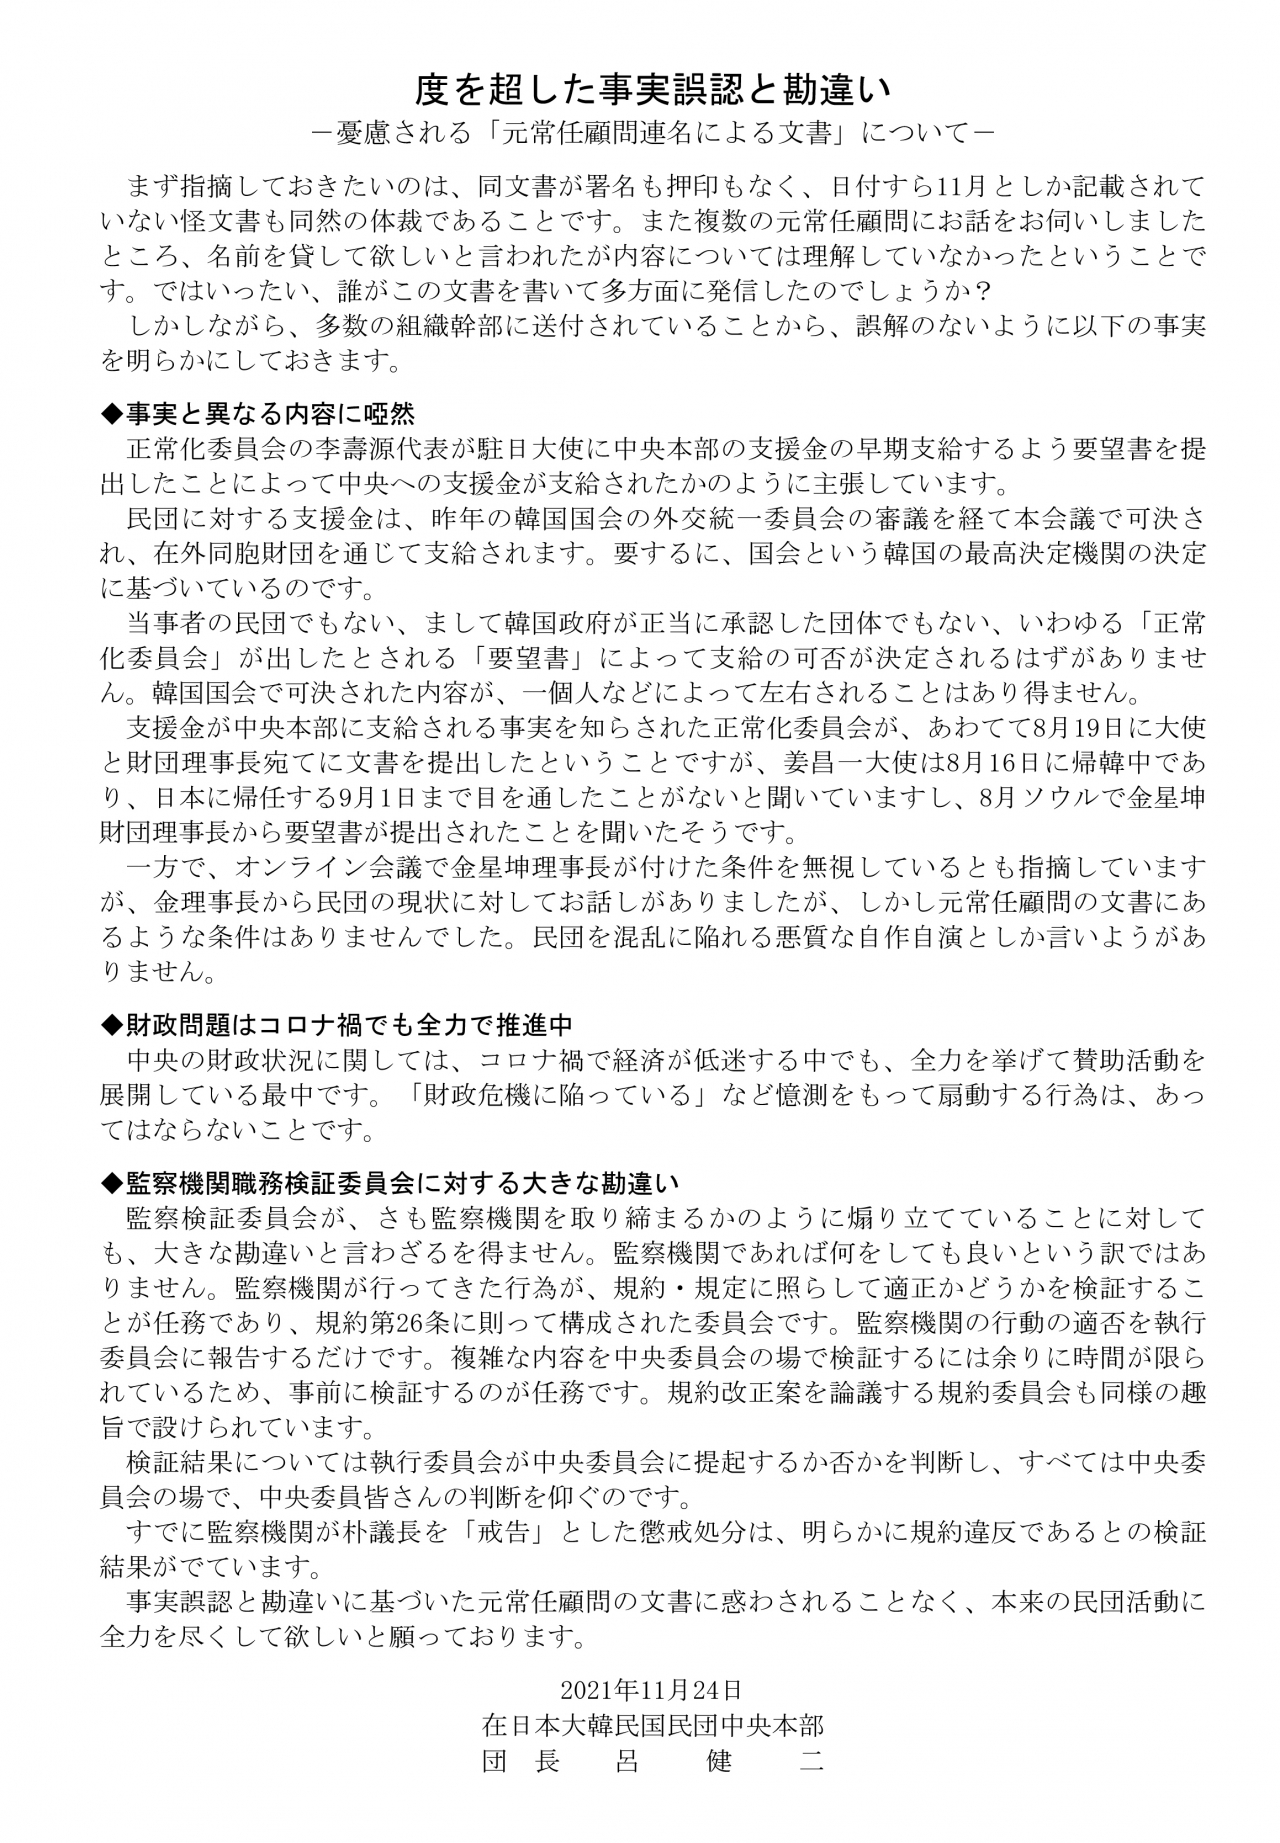 여건이 민단중앙단장은 11월24일 ‘도를 넘은 사실오인과 착각’이라는 제목의 문서를 발표하면서 민단 정상화위원회를 비판했다.